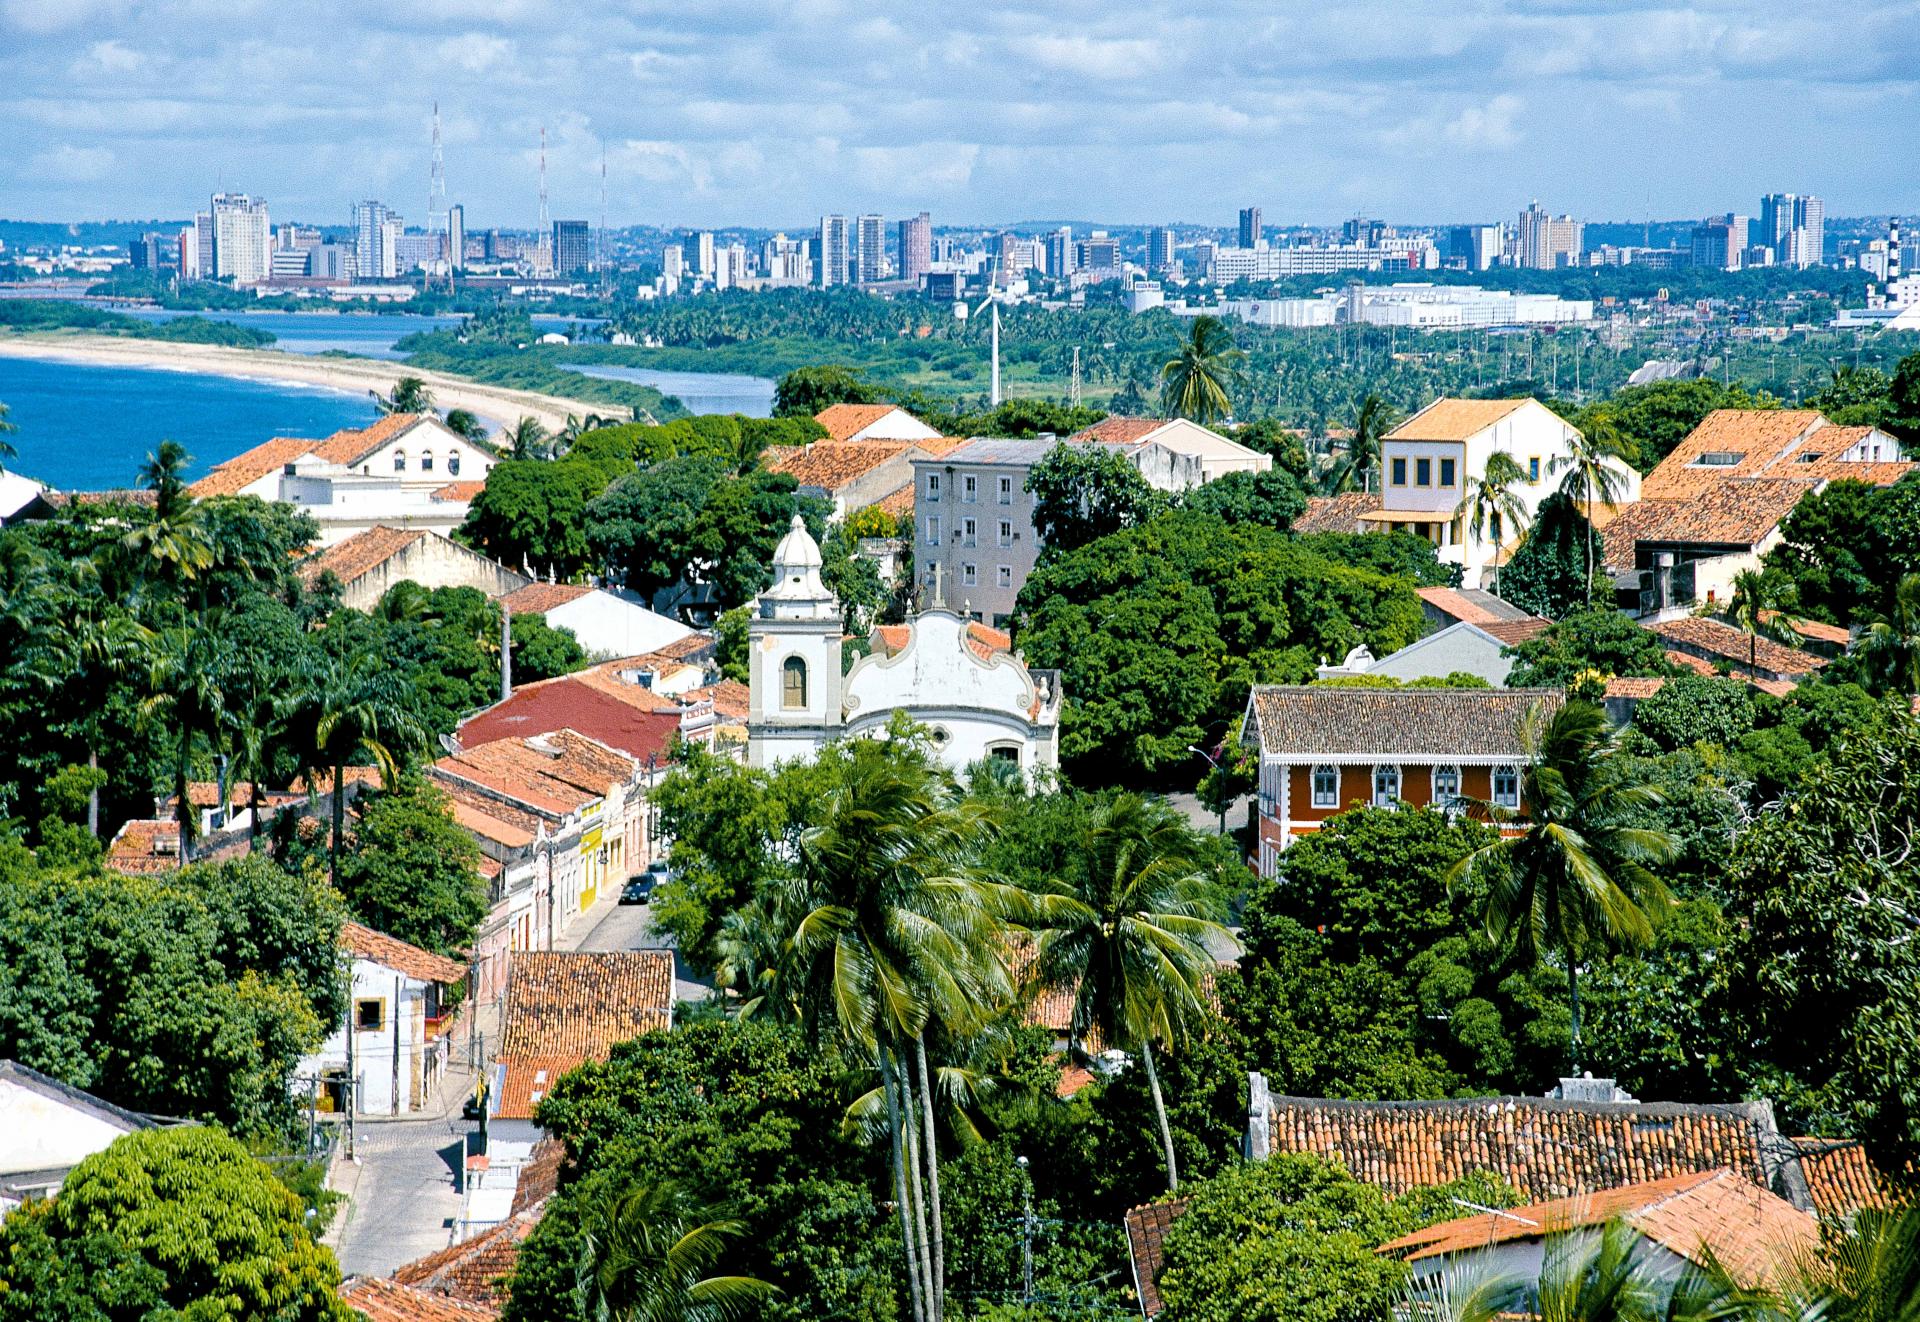 Tagestour Recife & Olinda City Tour (8h, privat): Überblick